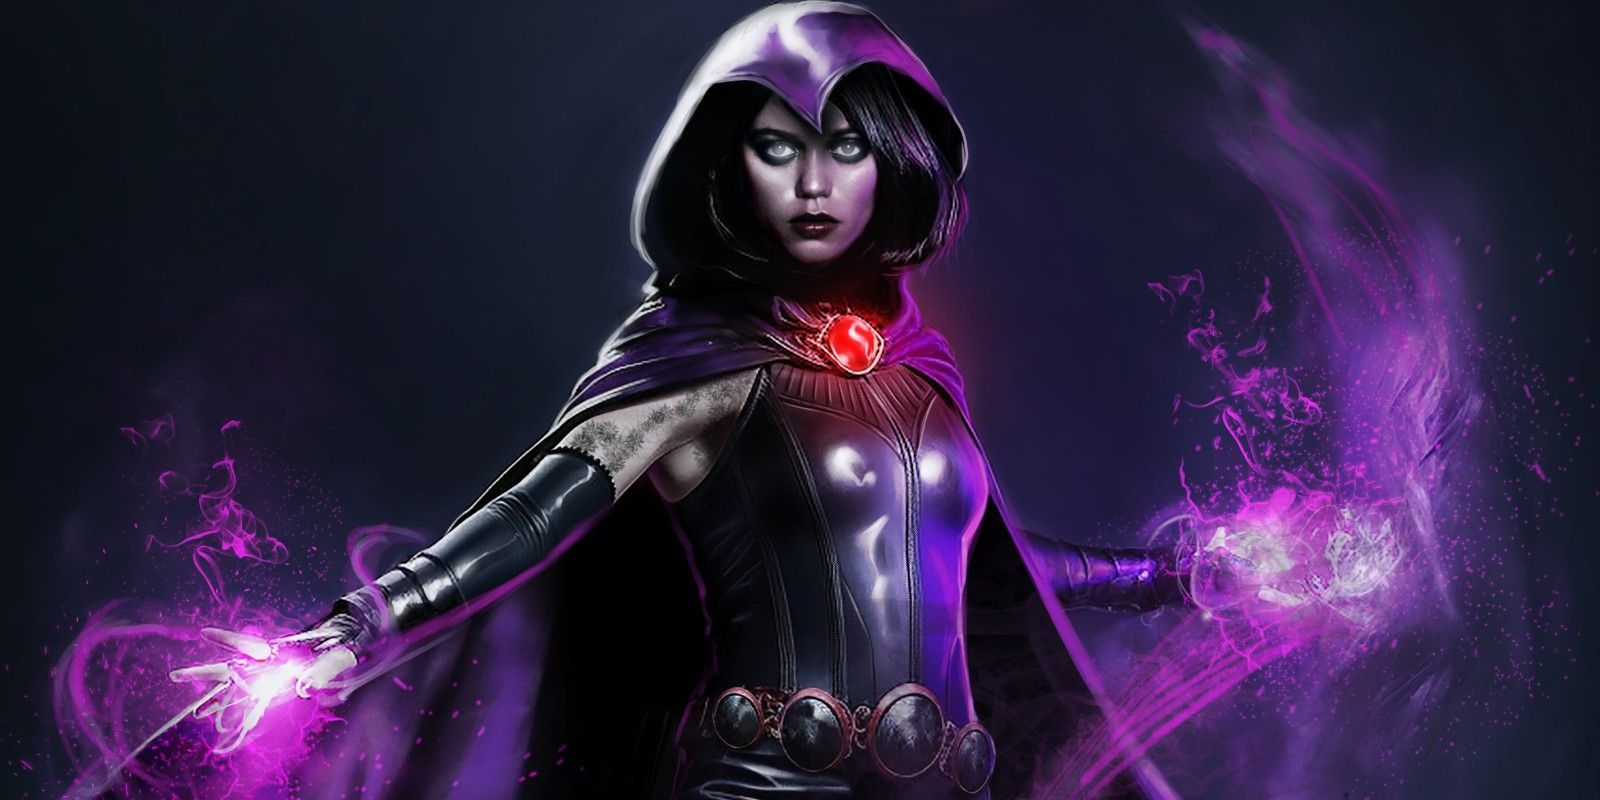 Fan art of Wednesday's Jenna Ortega as Raven for James Gunn's DC Universe